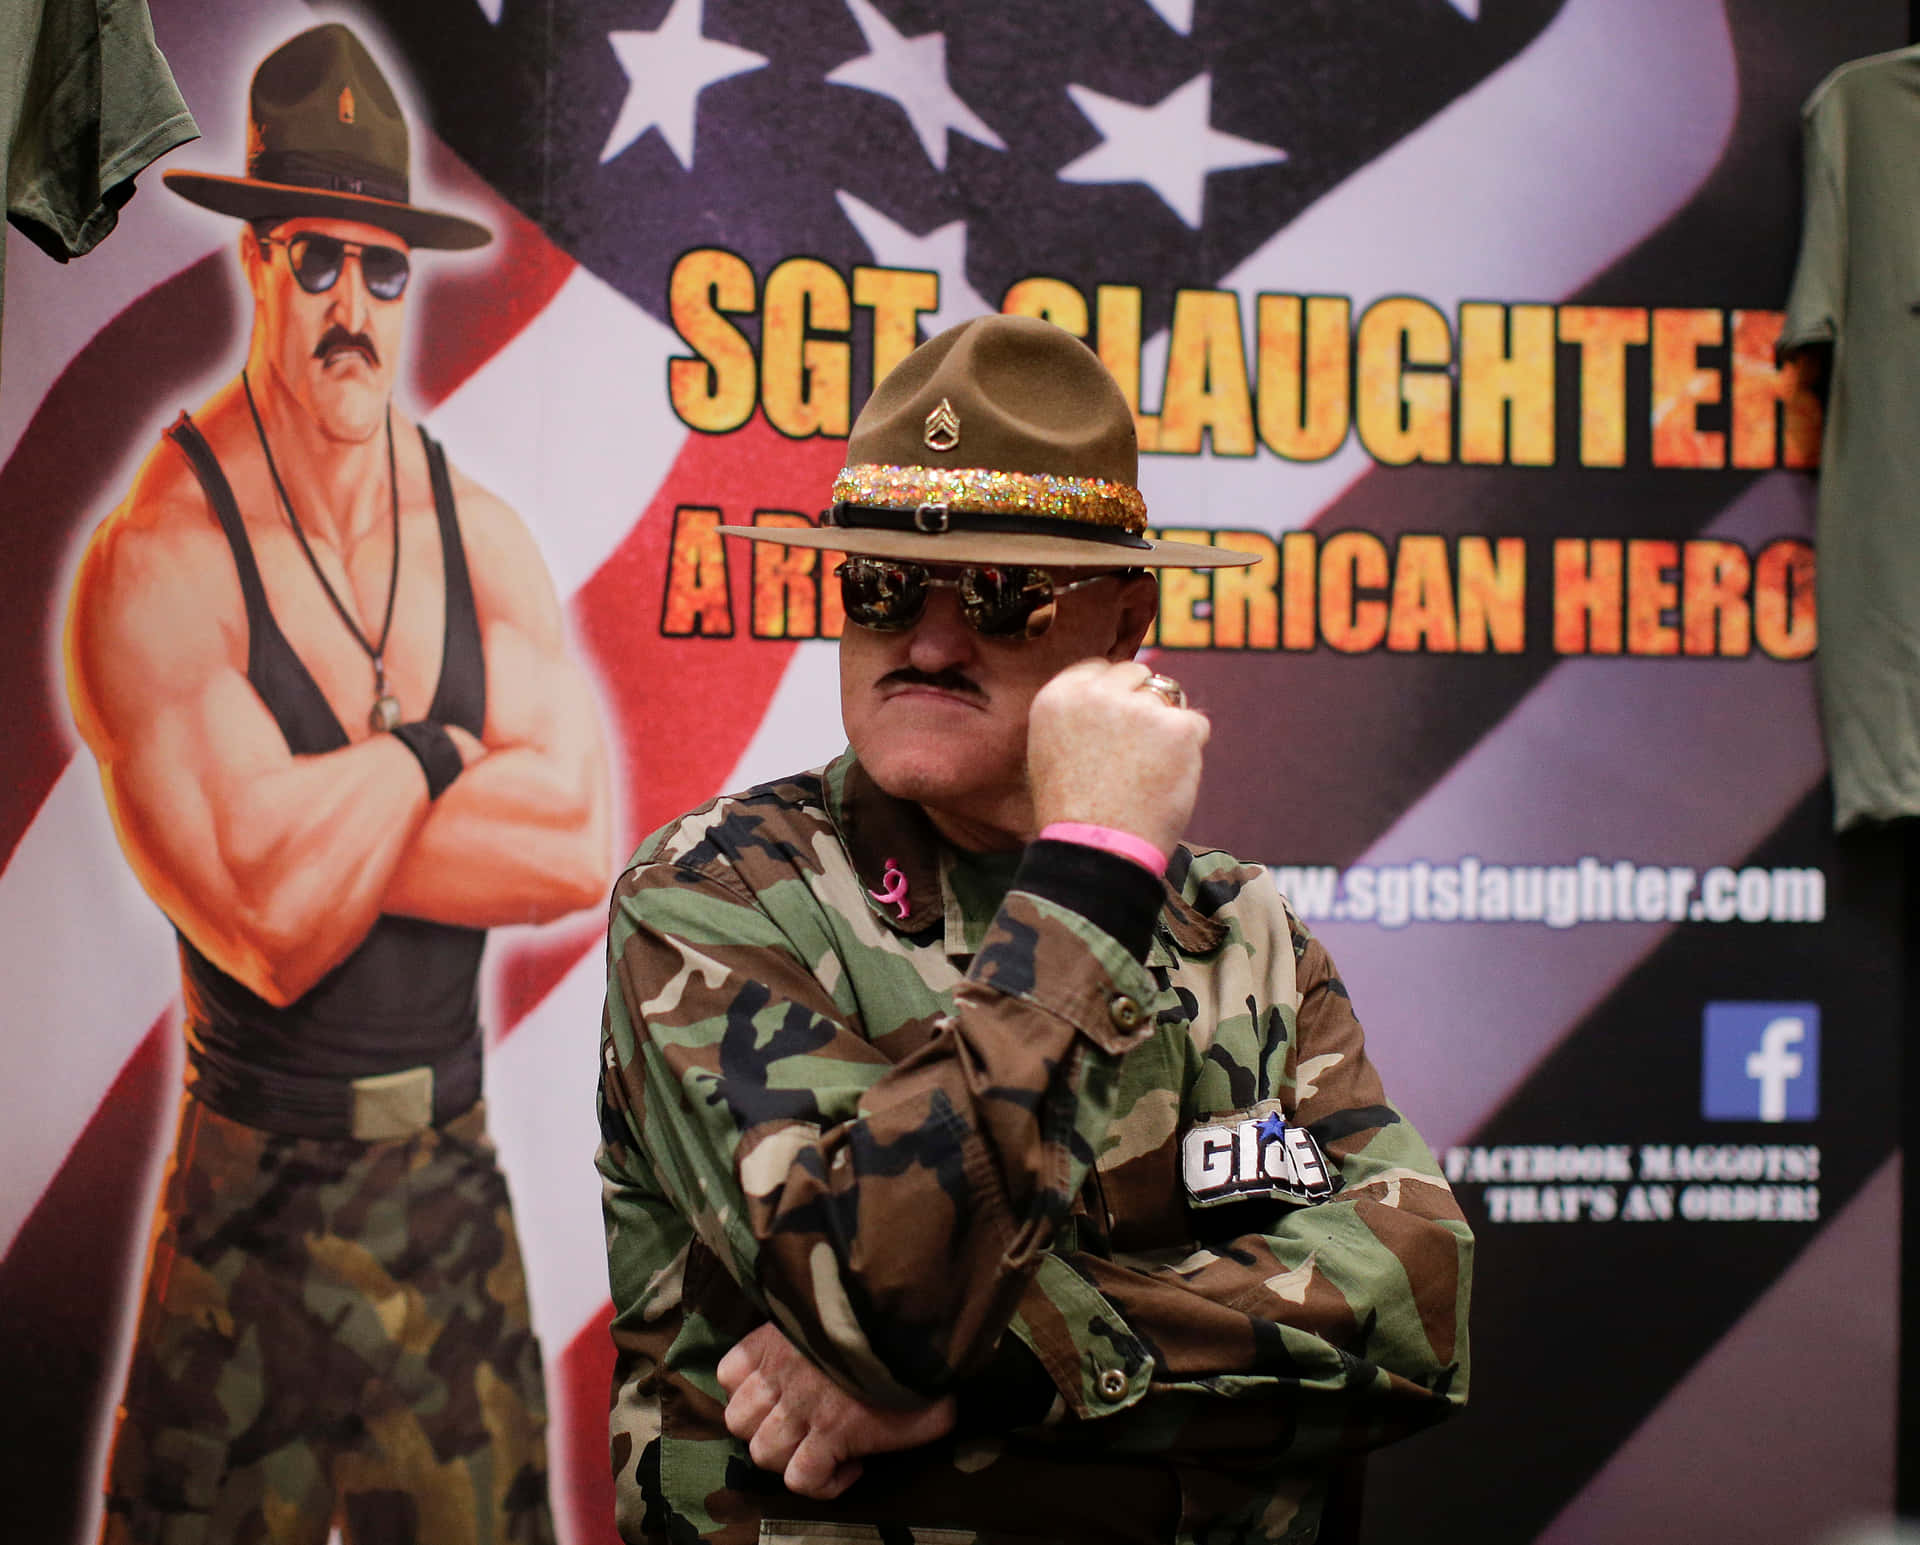 Iconode Sgt. Slaughter En La Lucha Libre Fondo de pantalla